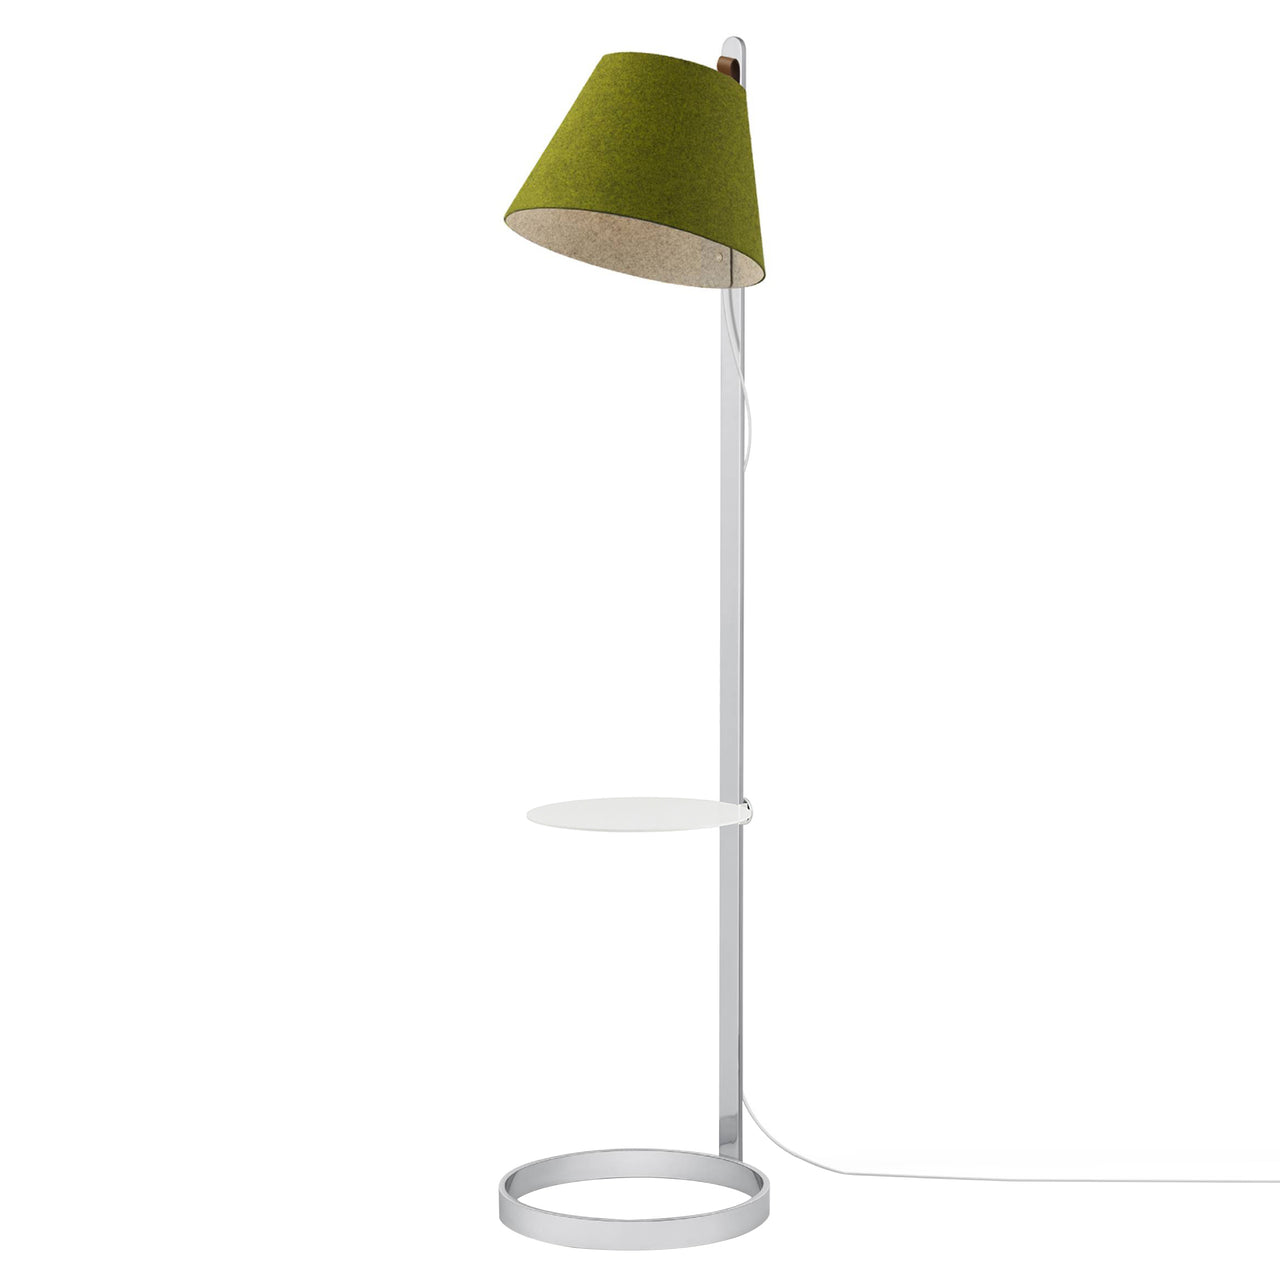 Lana Magnetic Floor Lamp: Moss + Chrome